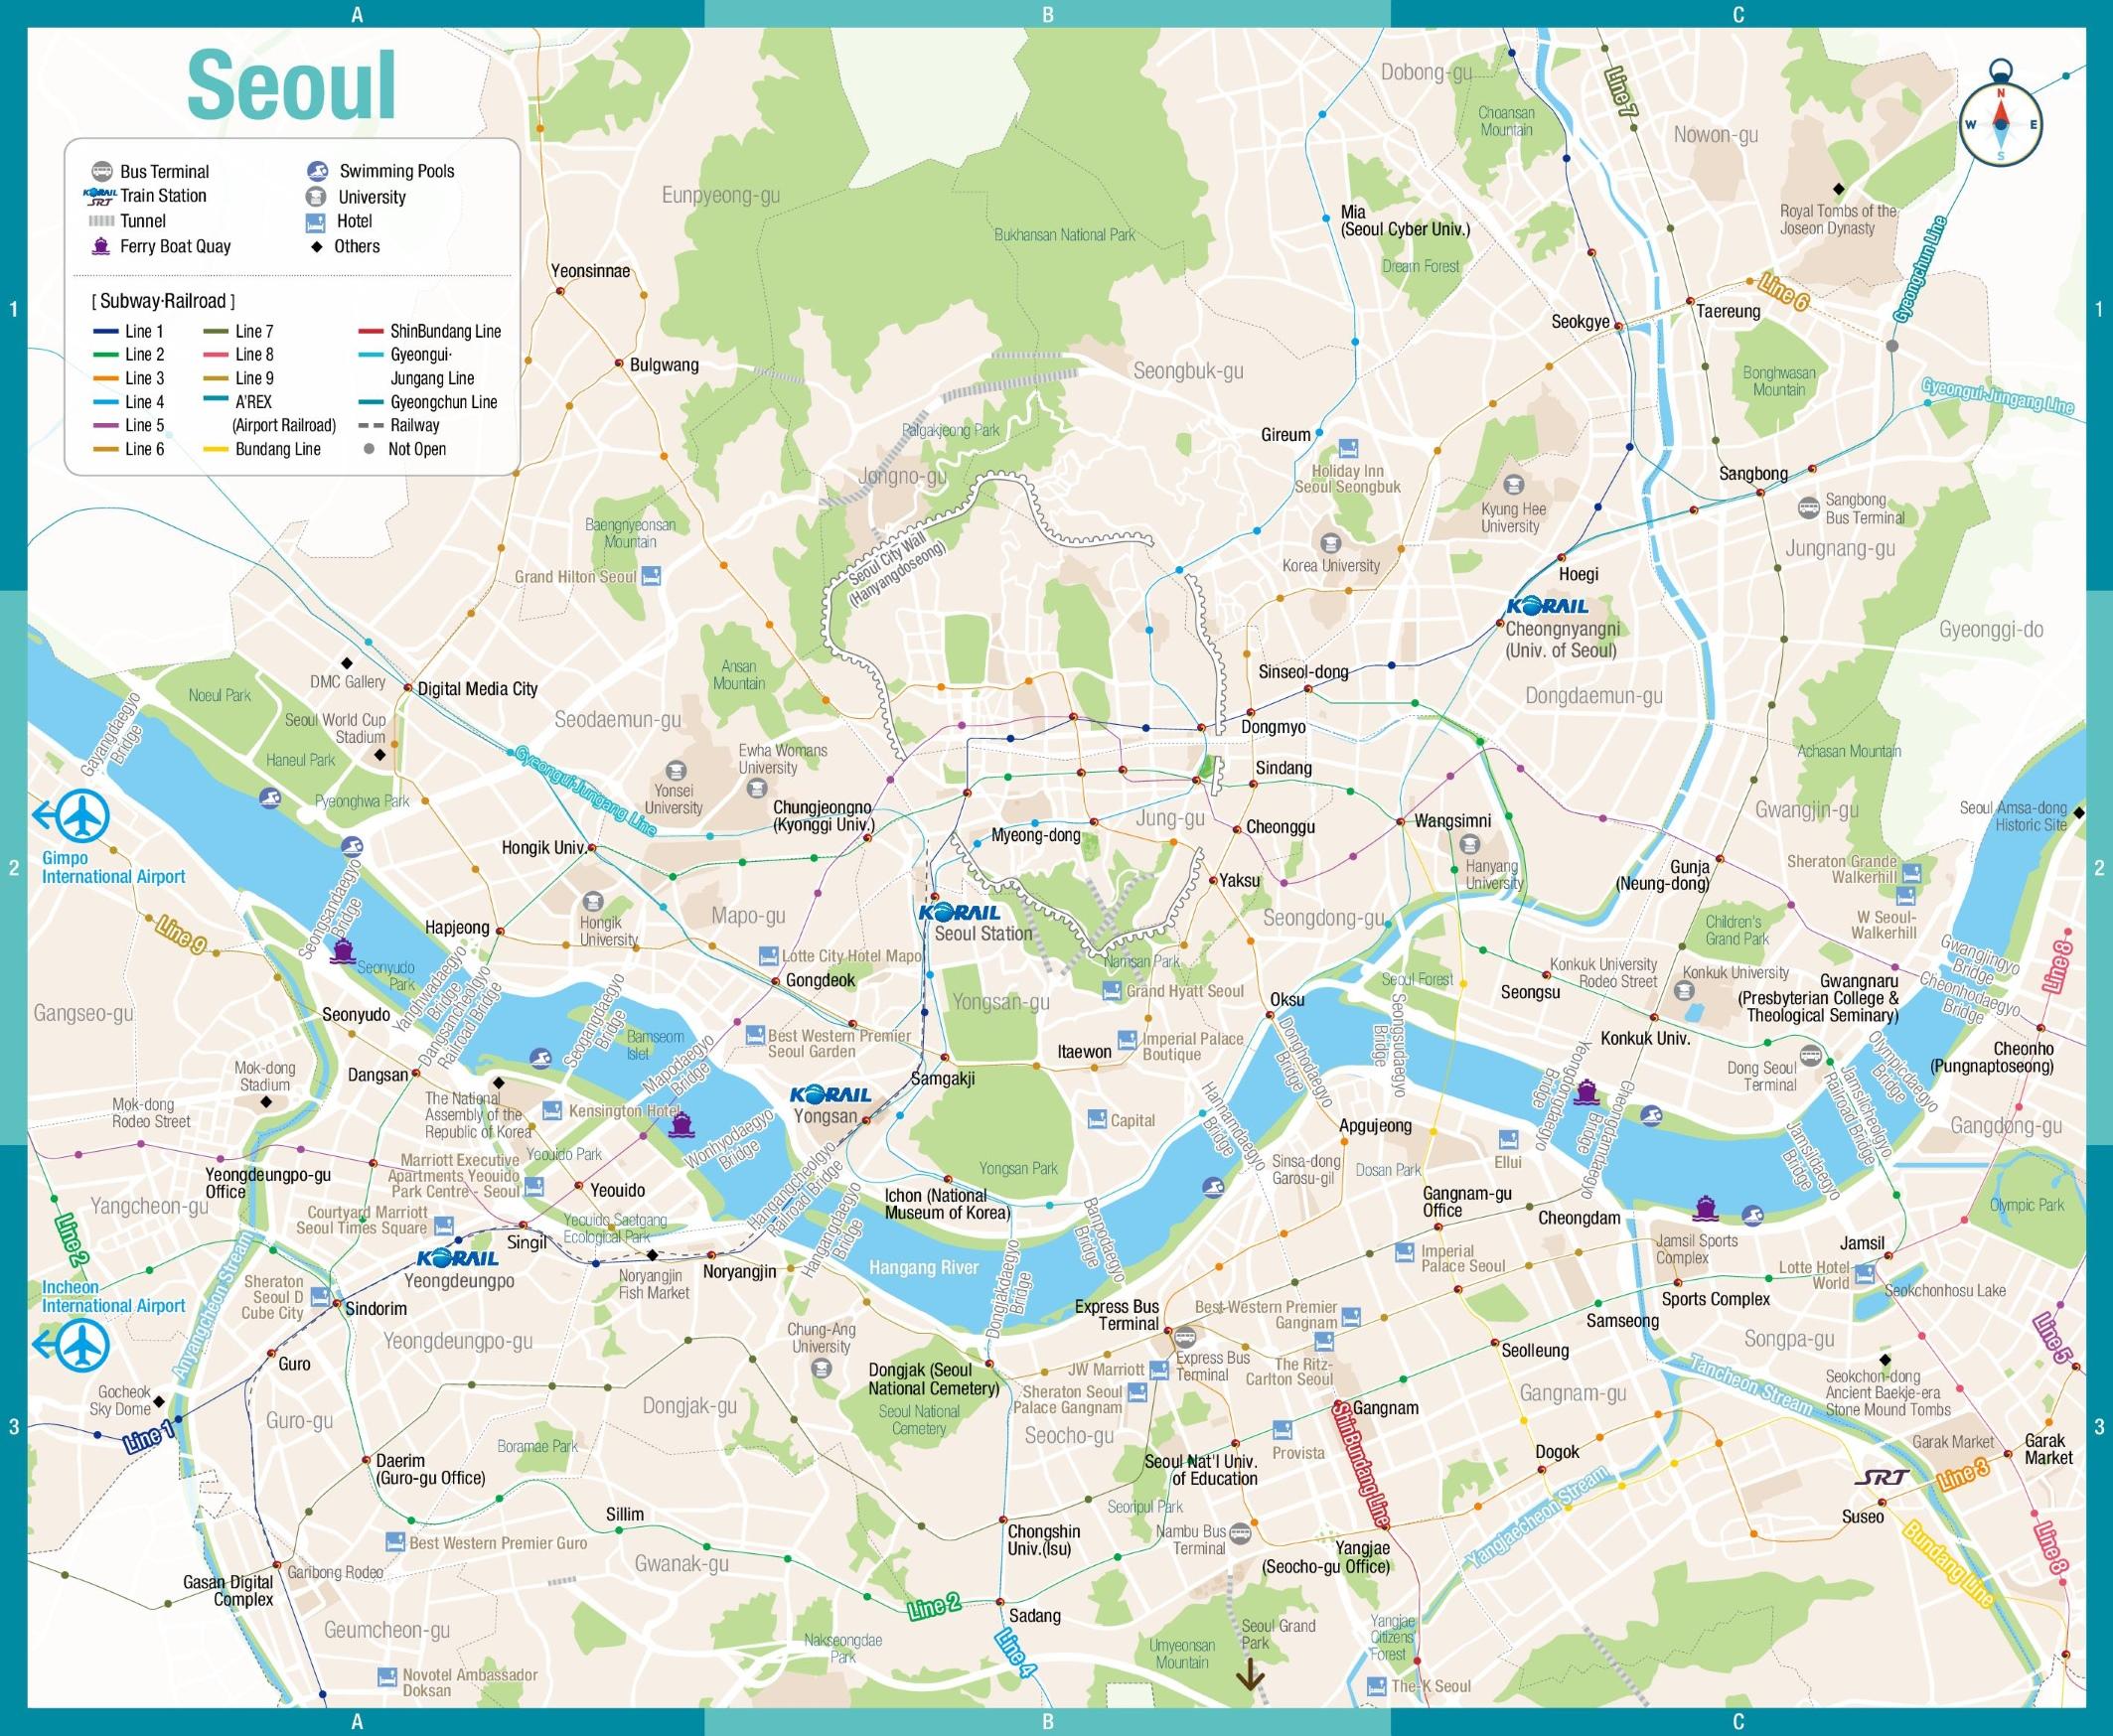 seoul city tour bus map